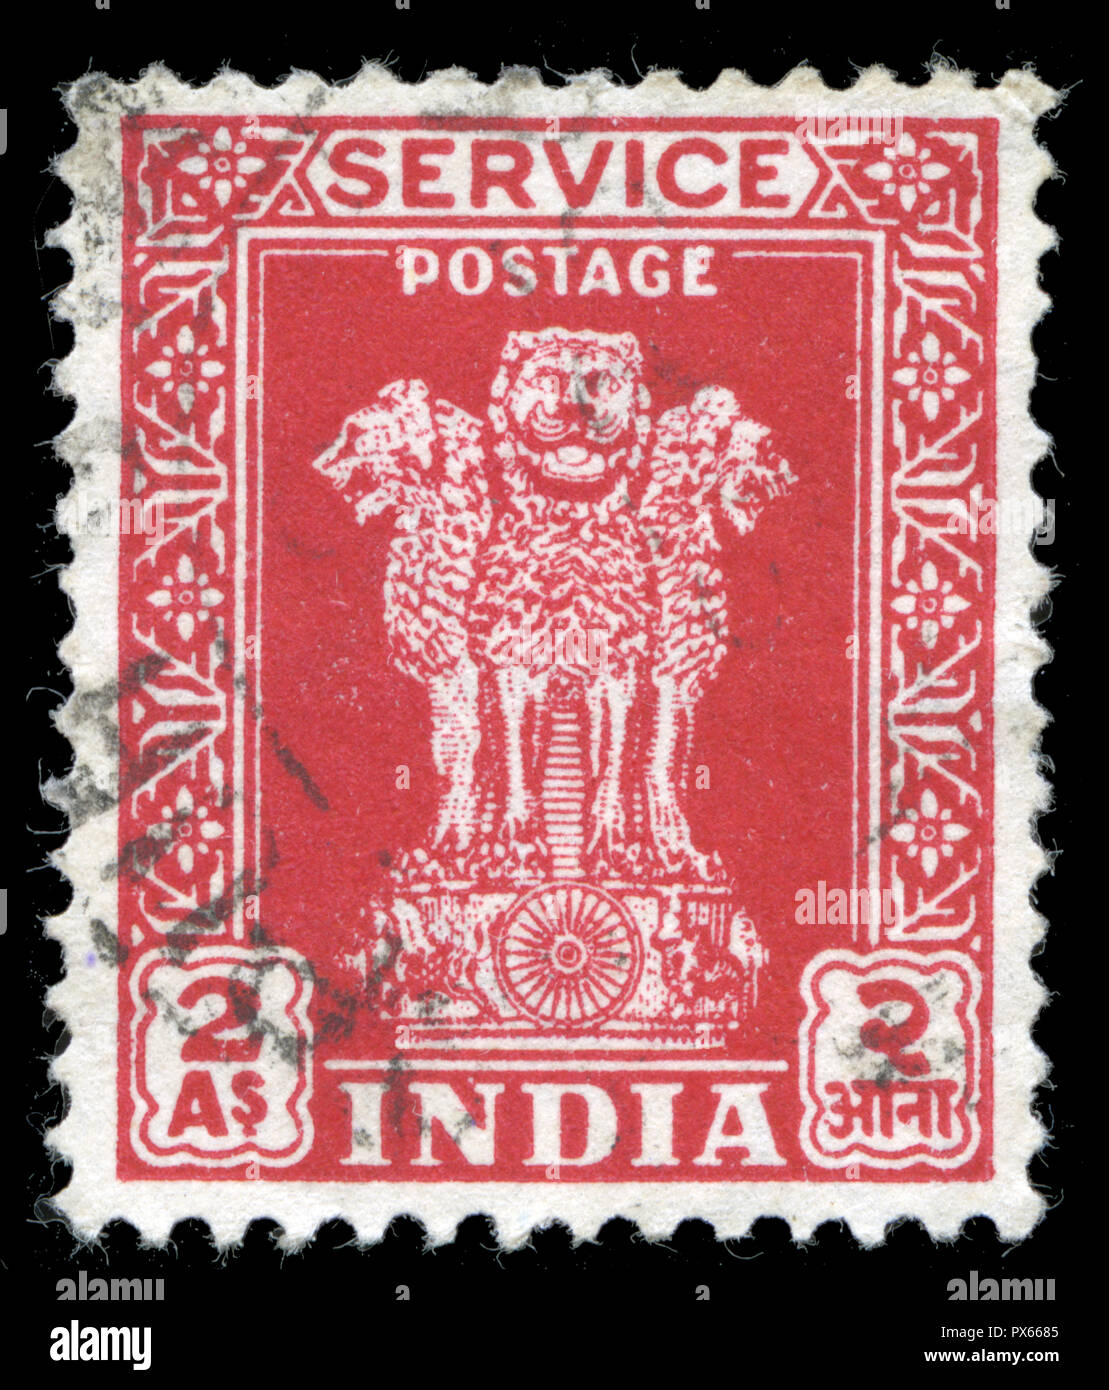 Con timbro postale timbro dall'India al servizio (1950-51) serie emesse nel 1950 Foto Stock